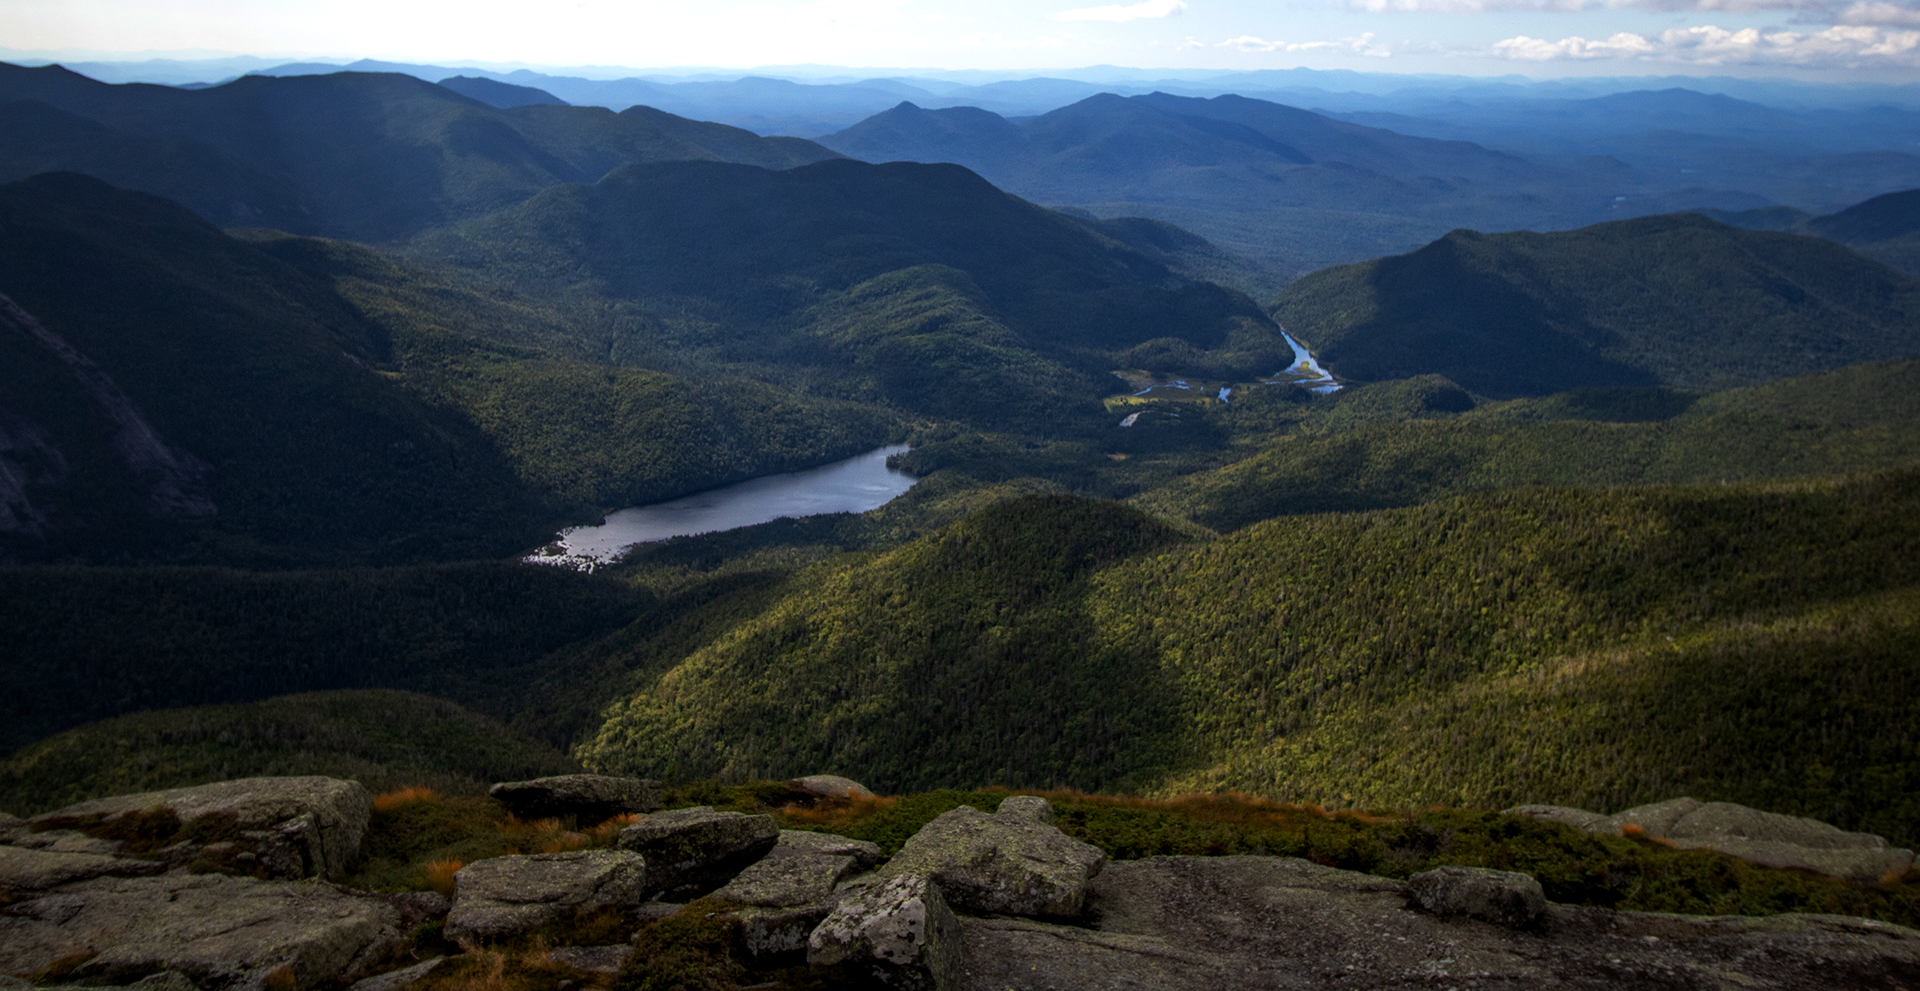 View from peak over Adirondacks